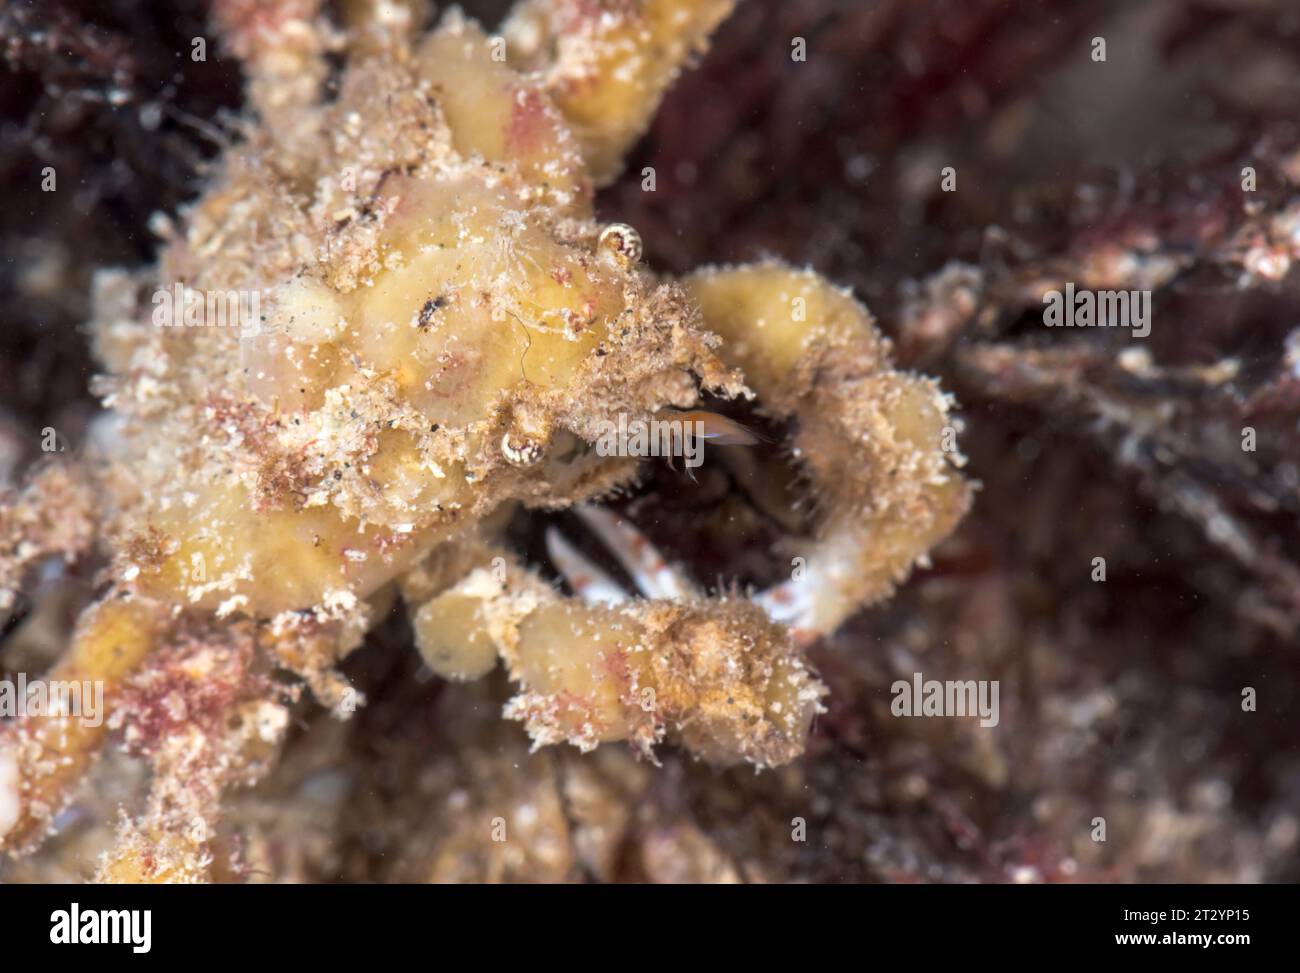 Crabe araignée Scorpion camouflé avec des éponges (Inachus dorsettensis), Inachidae, Decapoda, crustacé. Sussex, Royaume-Uni Banque D'Images